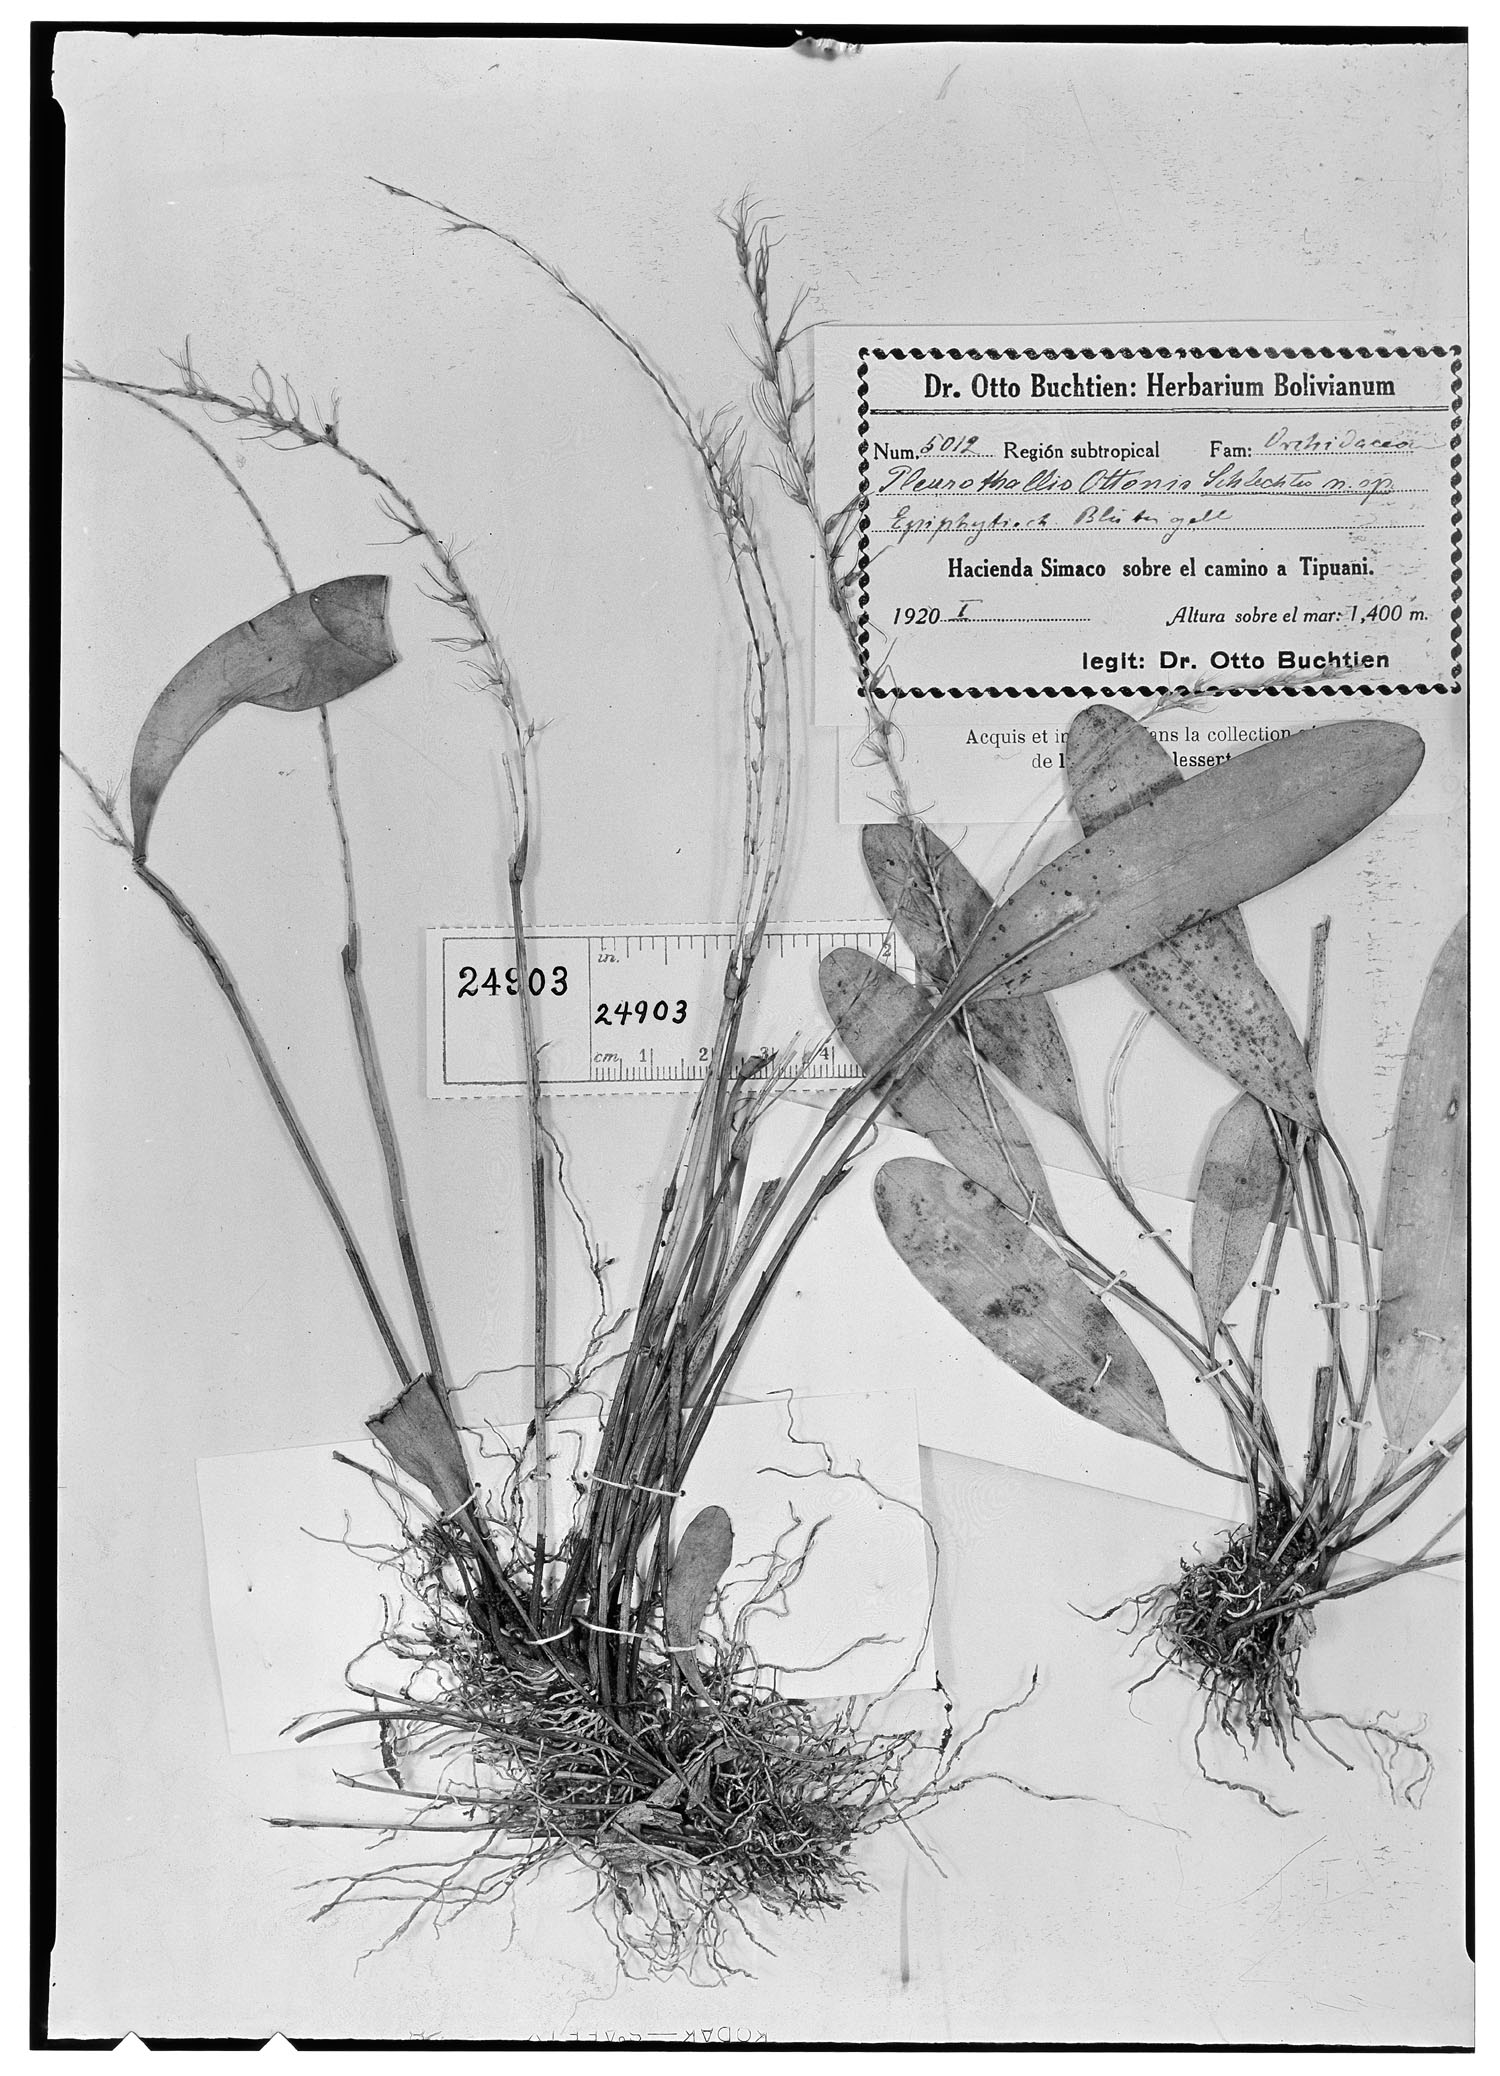 Anathallis sclerophylla image